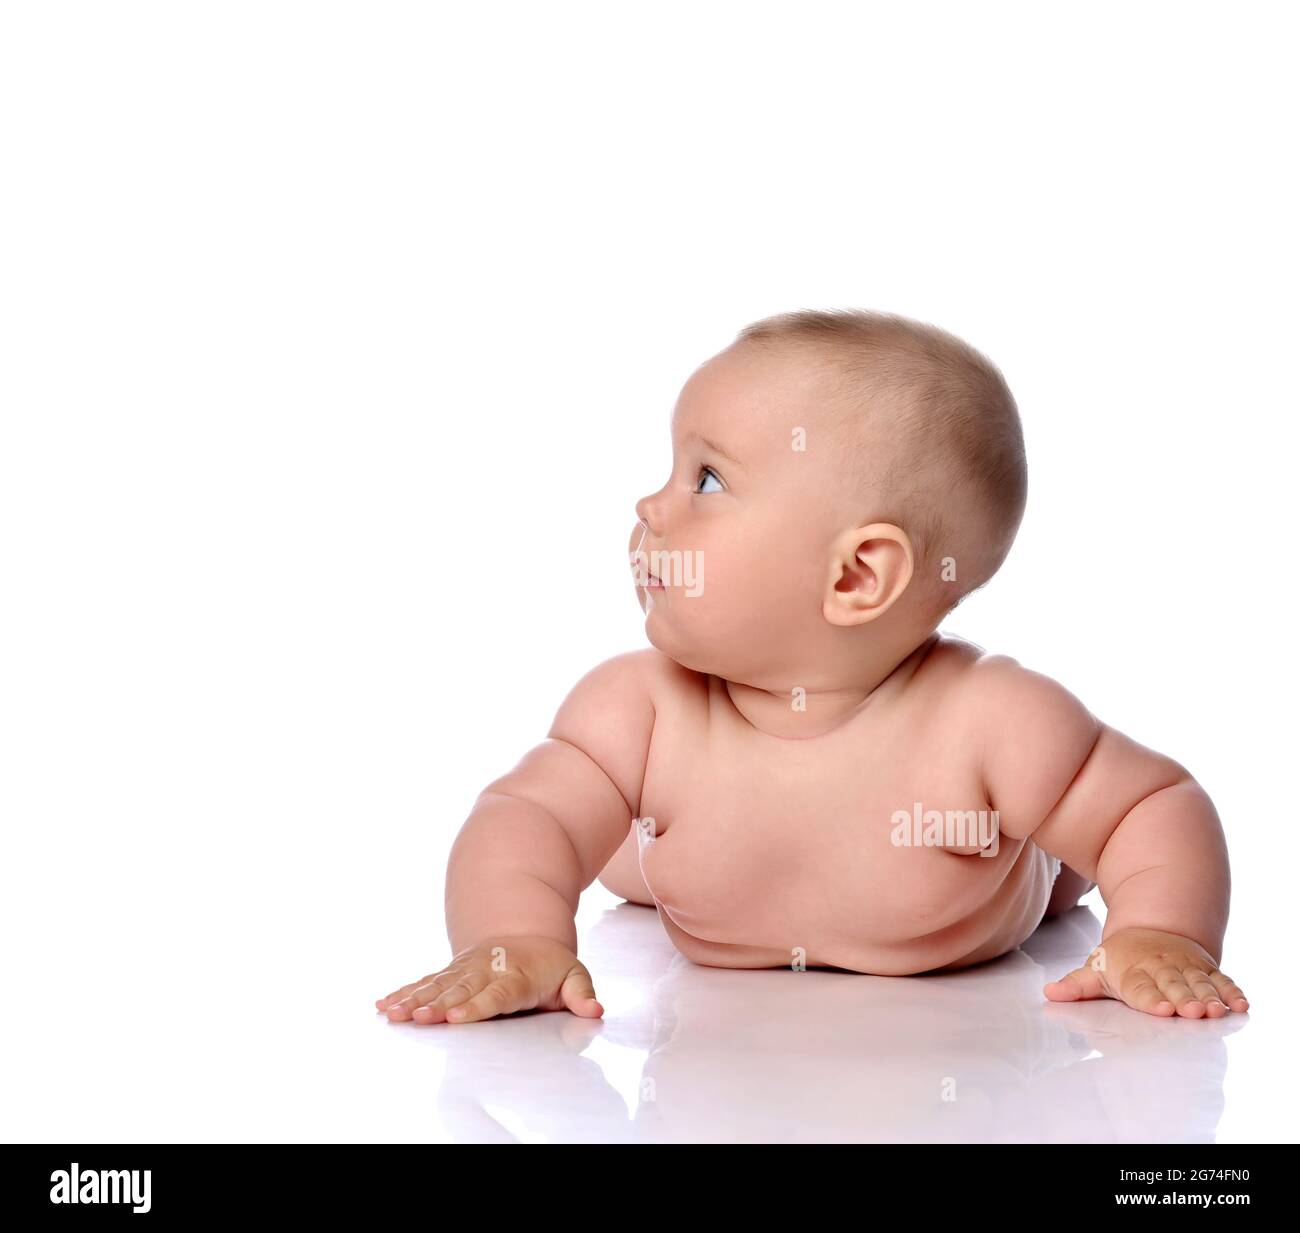 Neugieriges Kleinkind Baby Baby Mädchen Kind in Windel liegt auf ihrem Bauch, den Bauch gelehnt, steigt auf die Hände und schaut zur Seite Stockfoto